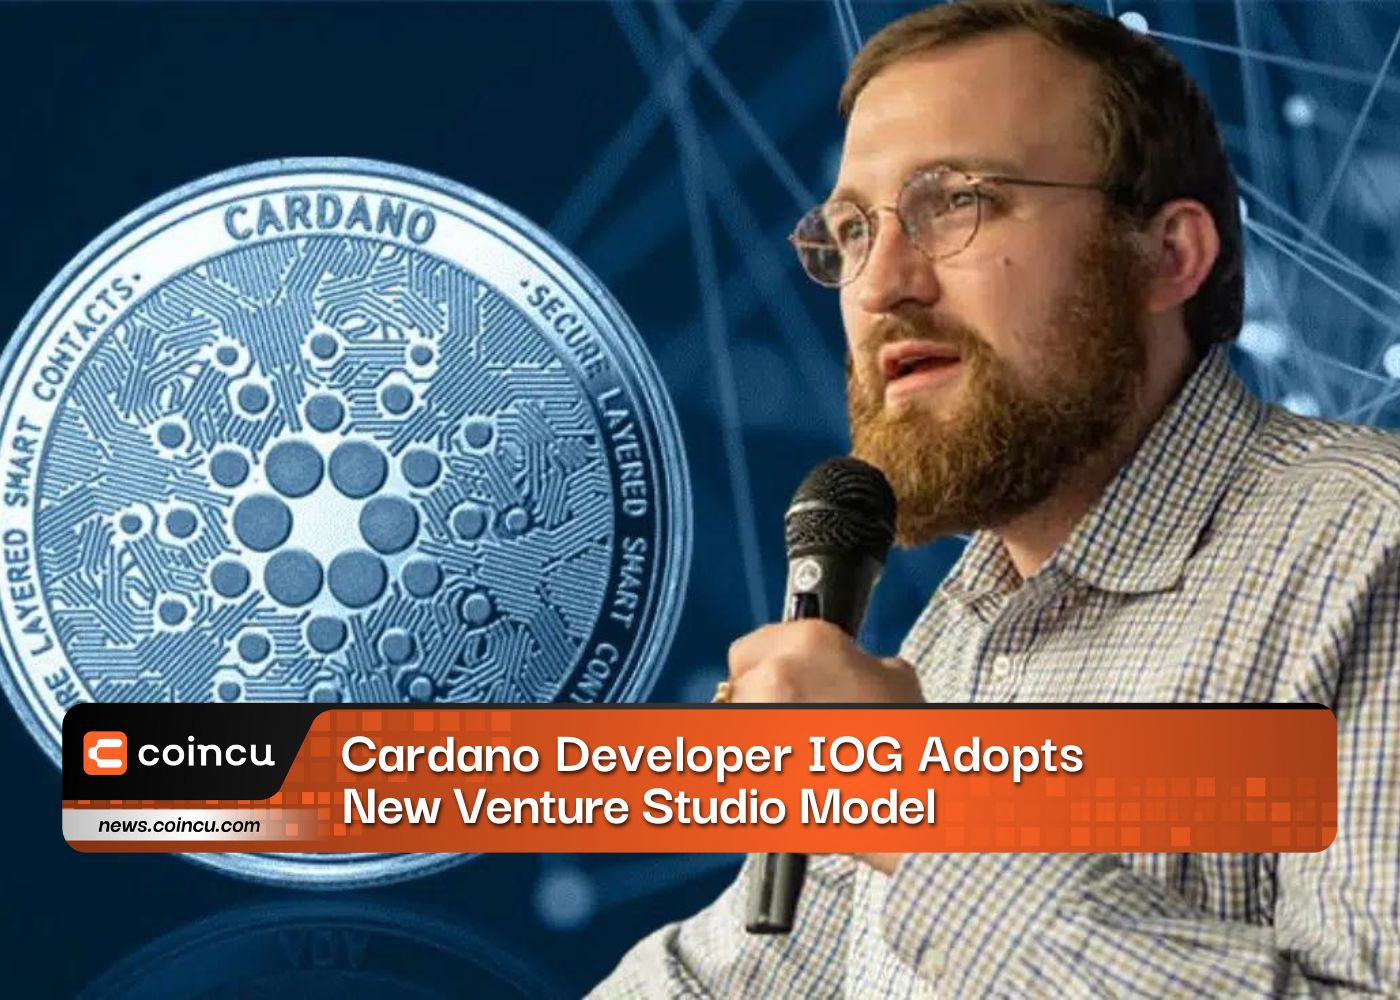 Cardano Developer IOG Adopts